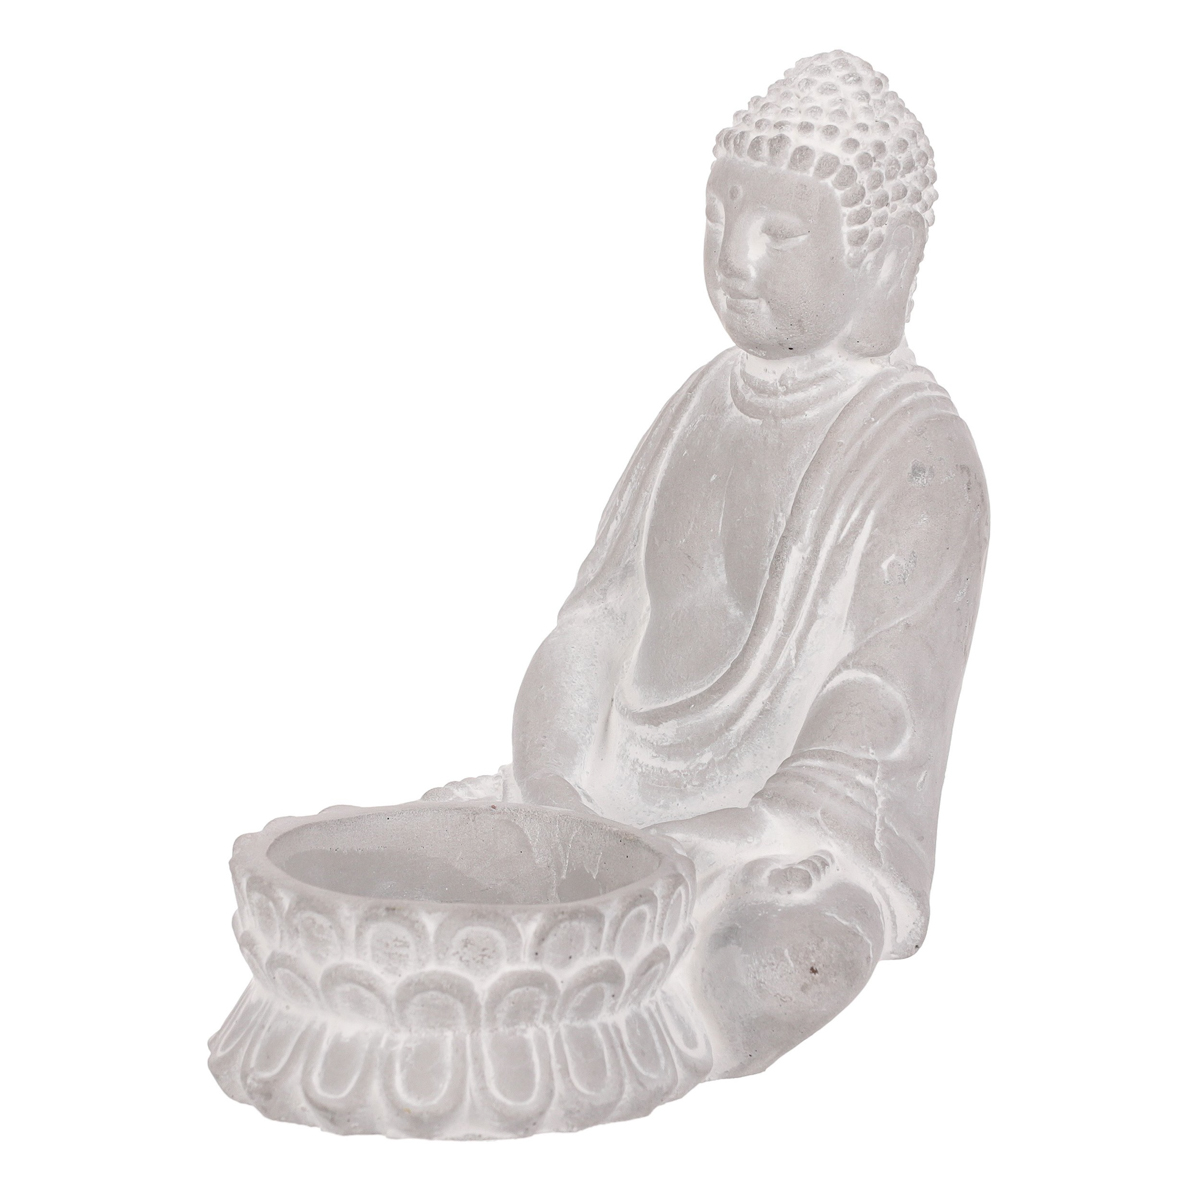 Budha, svícen na čajovou svíčku, betonová dekorace.